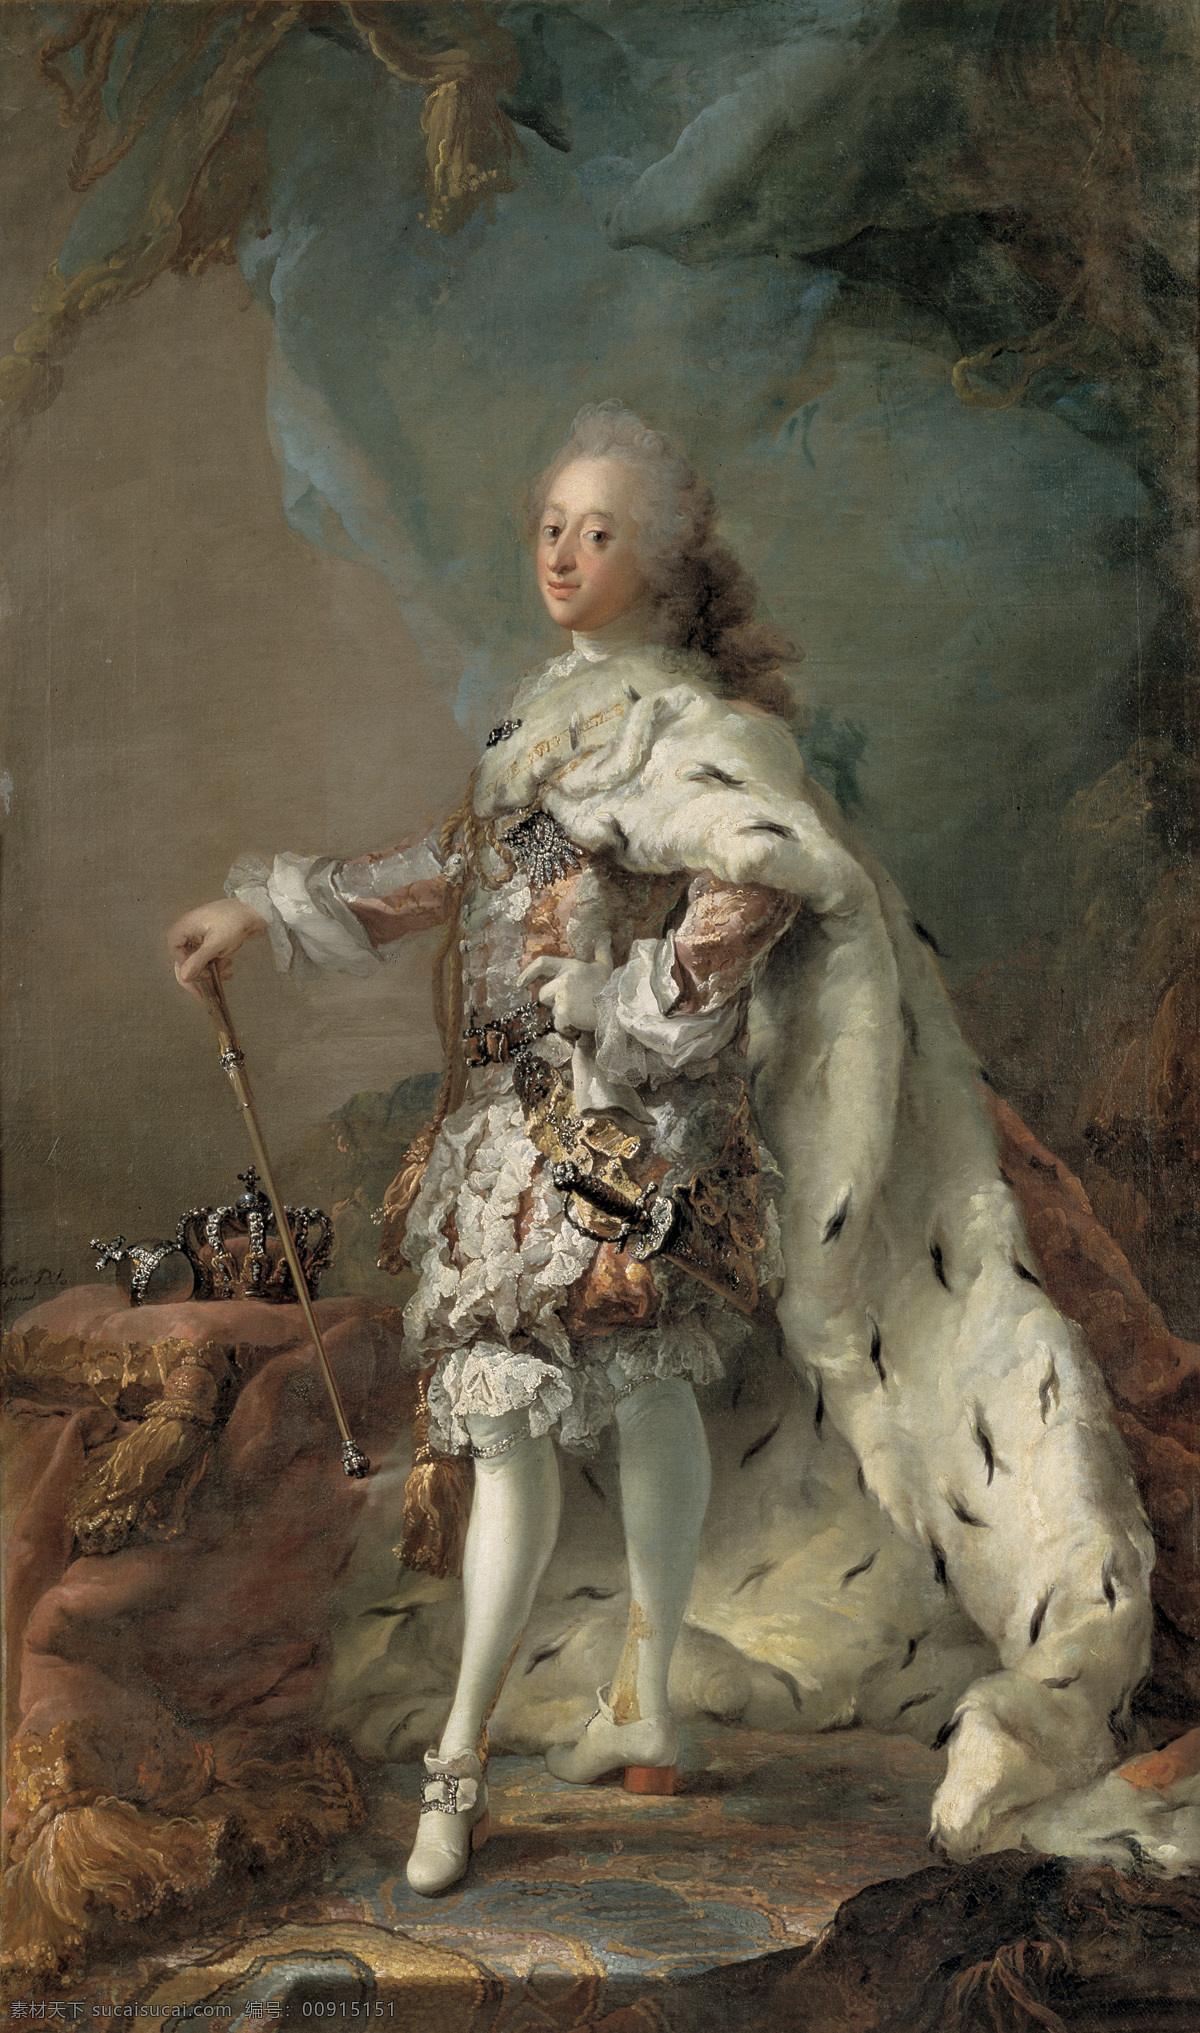 绘画书法 文化艺术 油画 腓烈特五世 丹麦国王 克里斯蒂安 六世 布兰 登堡 库姆 巴赫 索菲娅 长子 七 世 父 家居装饰素材